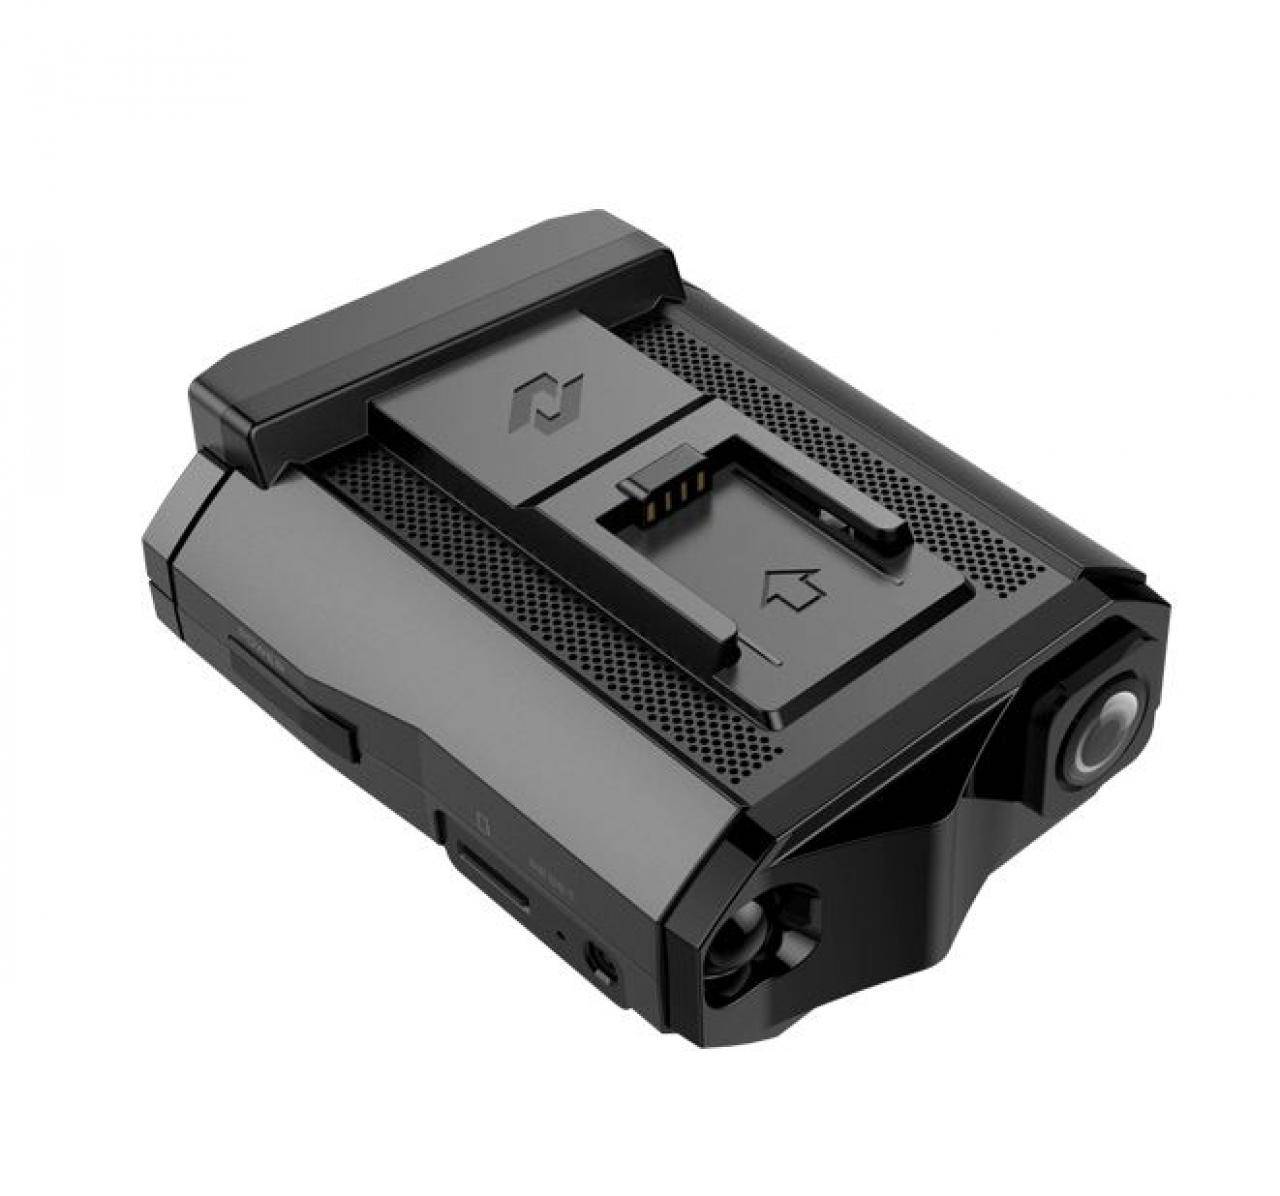 Гибридный видеорегистратор neoline x-cop 9300 отзывы покупателей и специалистов на отзовик